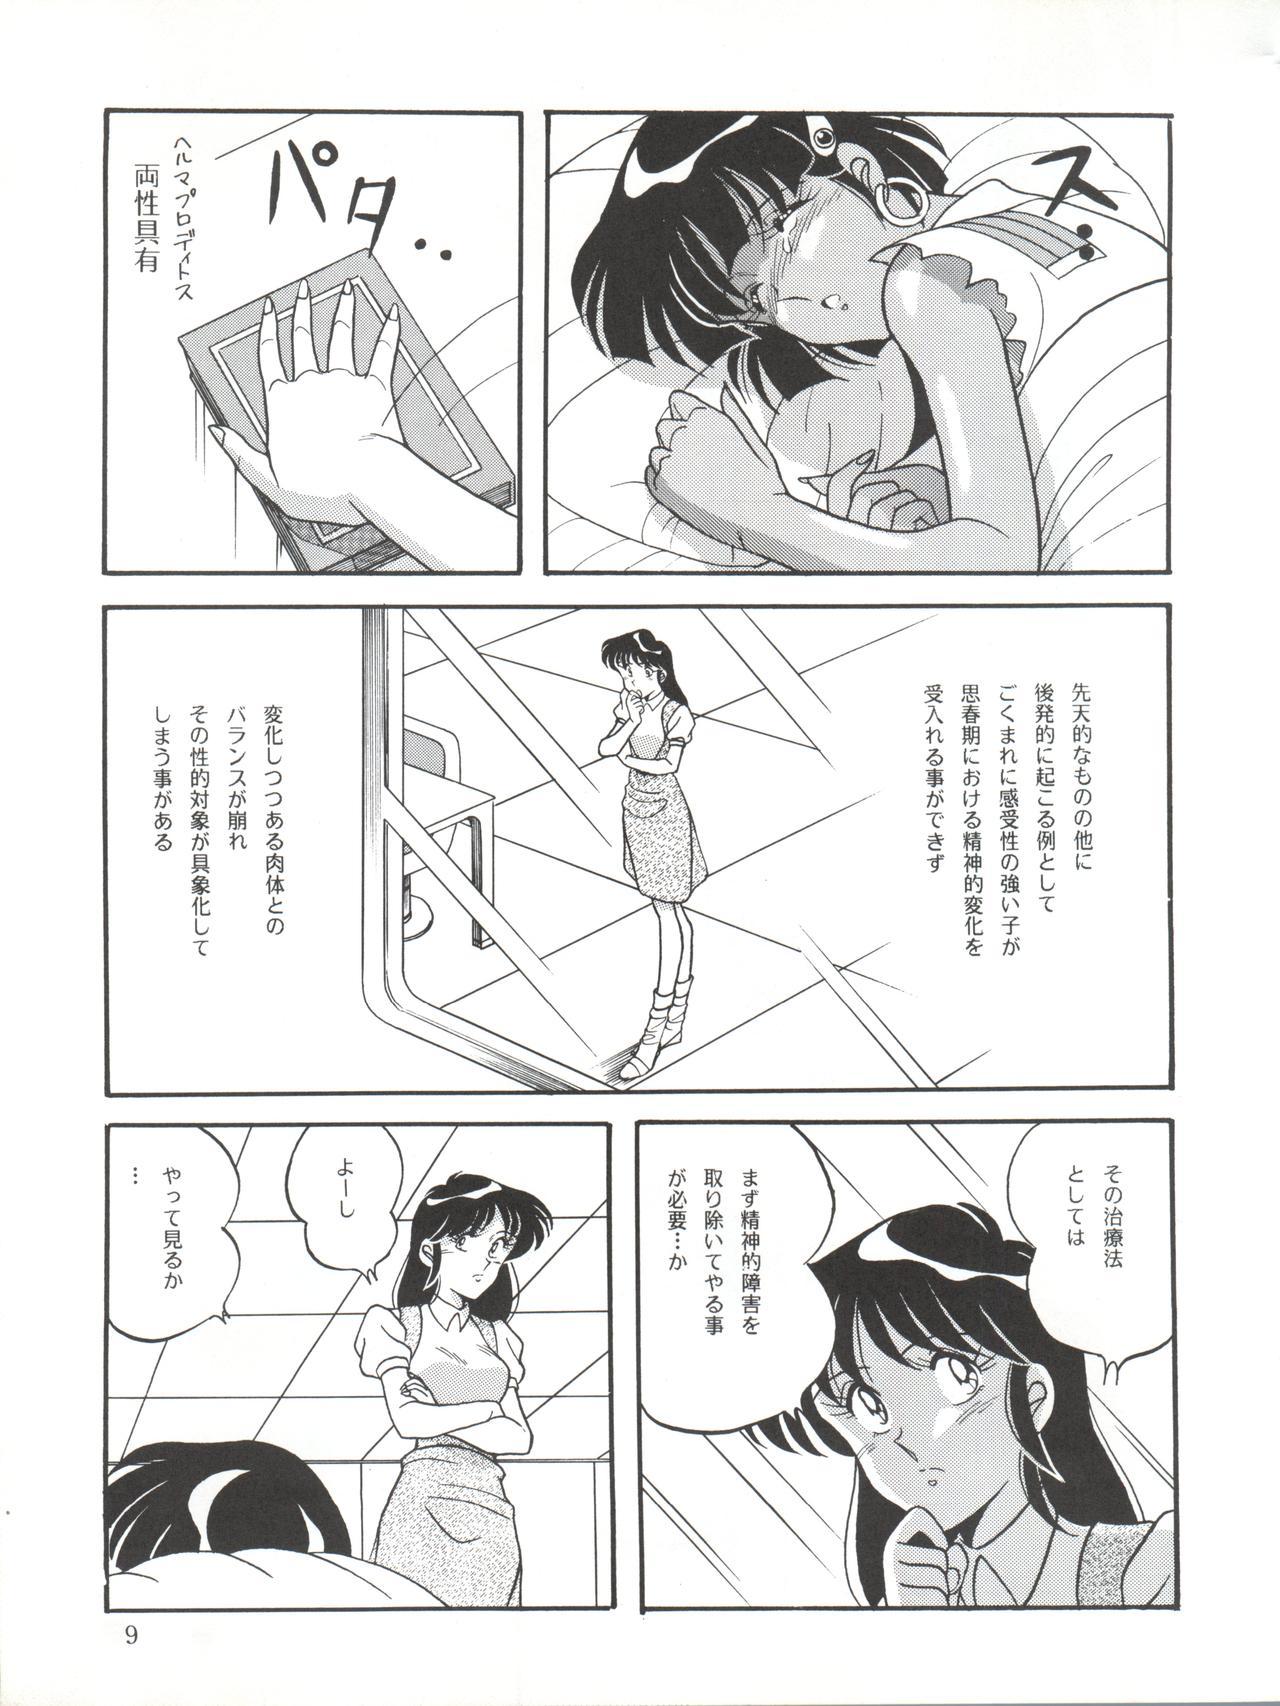  Vocalization 2 - Fushigi no umi no nadia Dirty - Page 9